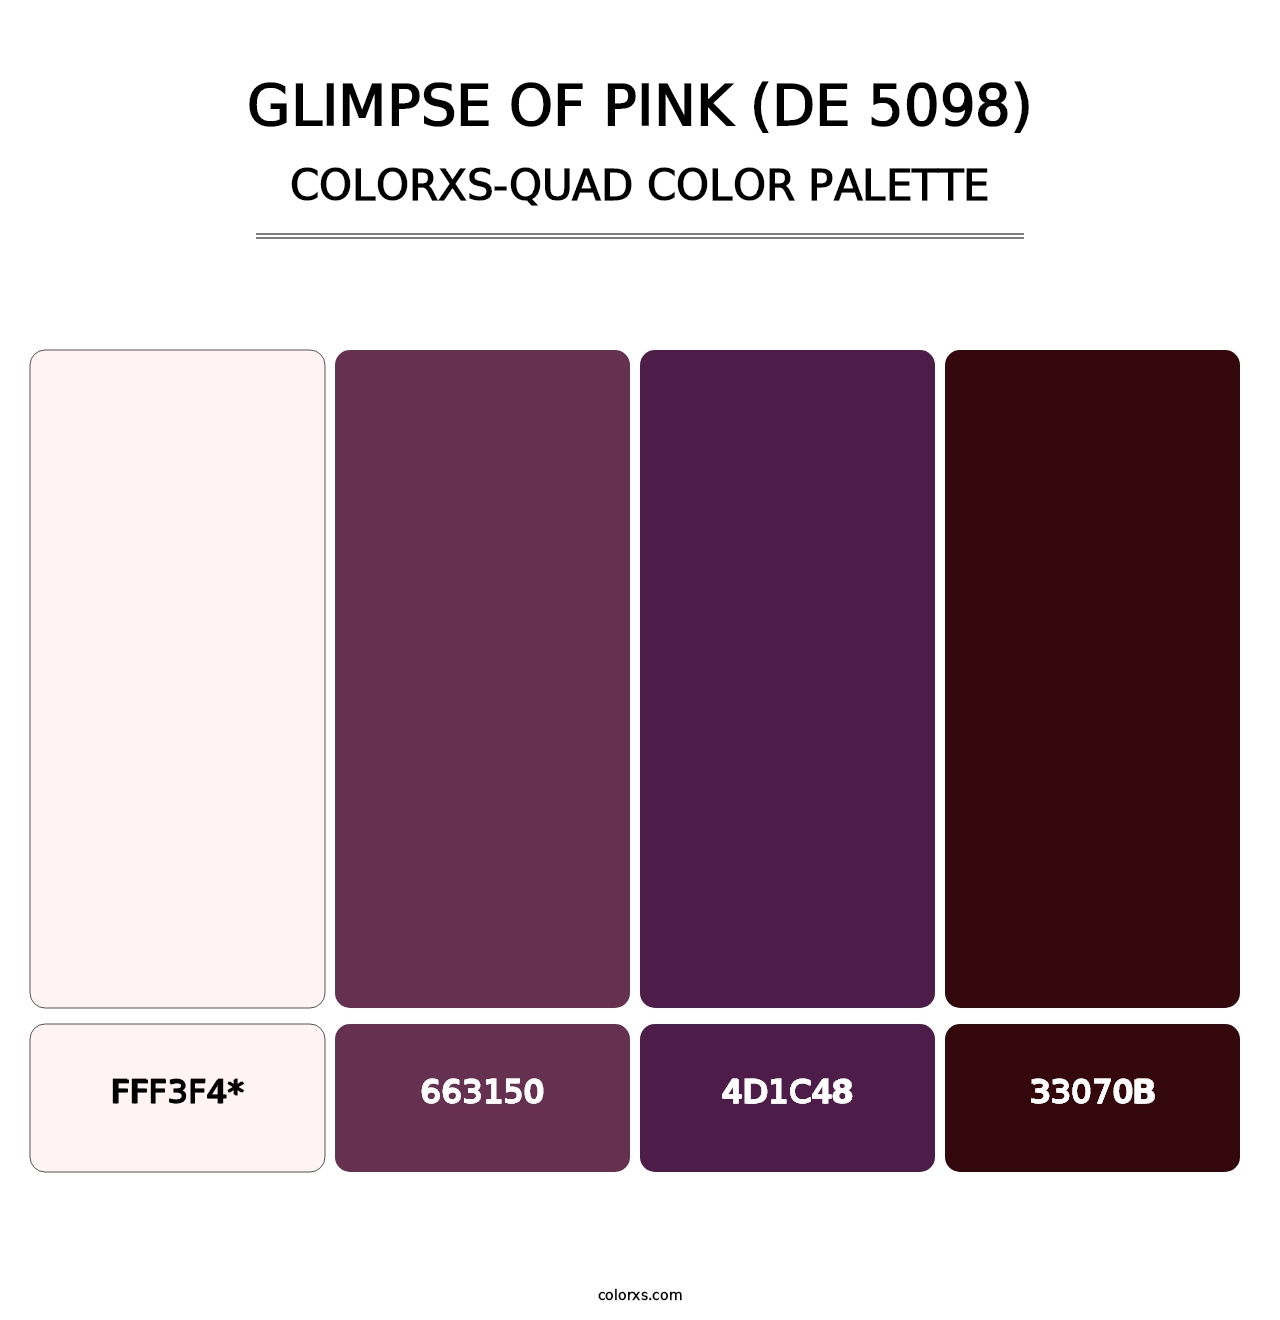 Glimpse of Pink (DE 5098) - Colorxs Quad Palette